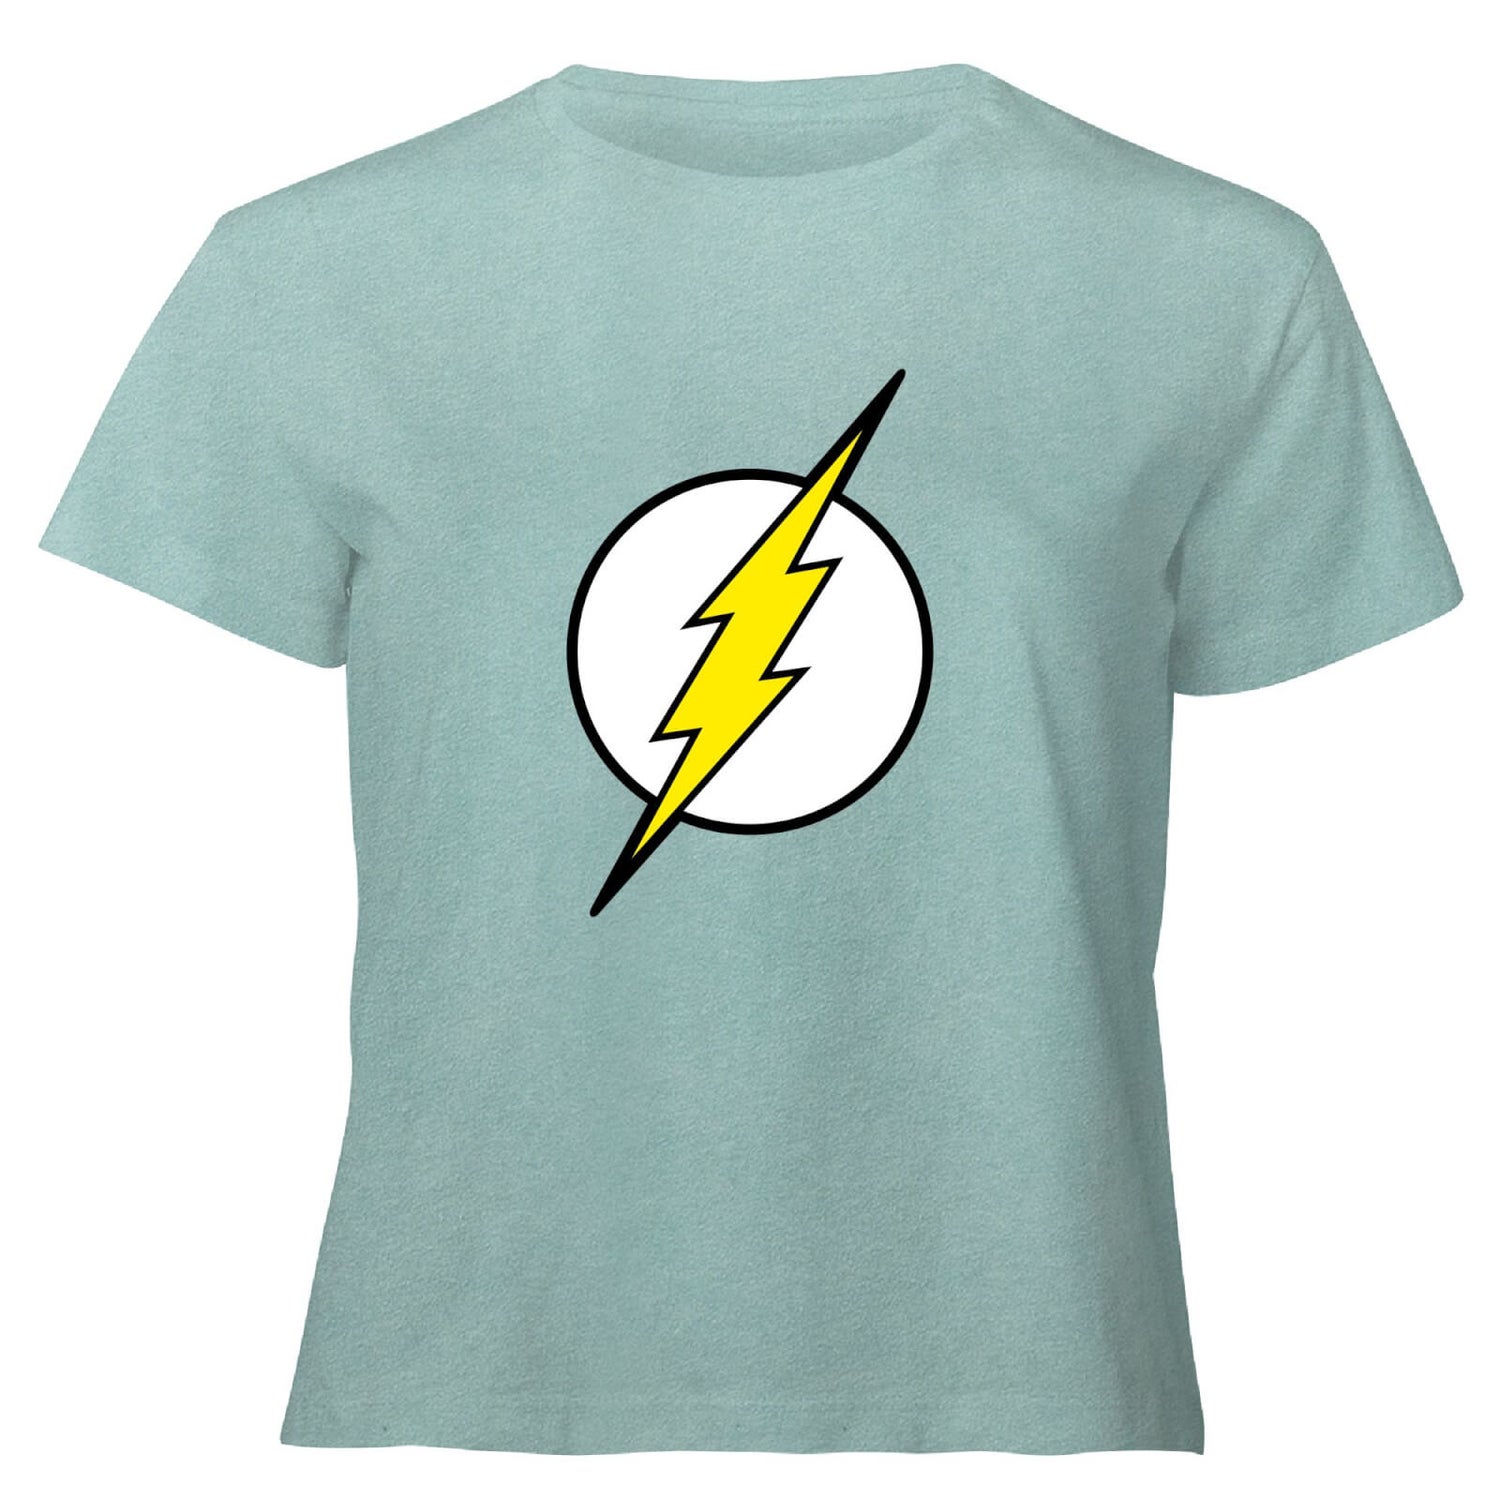 Justice League Flash Logo Women's Cropped T-Shirt - Mint Acid Wash